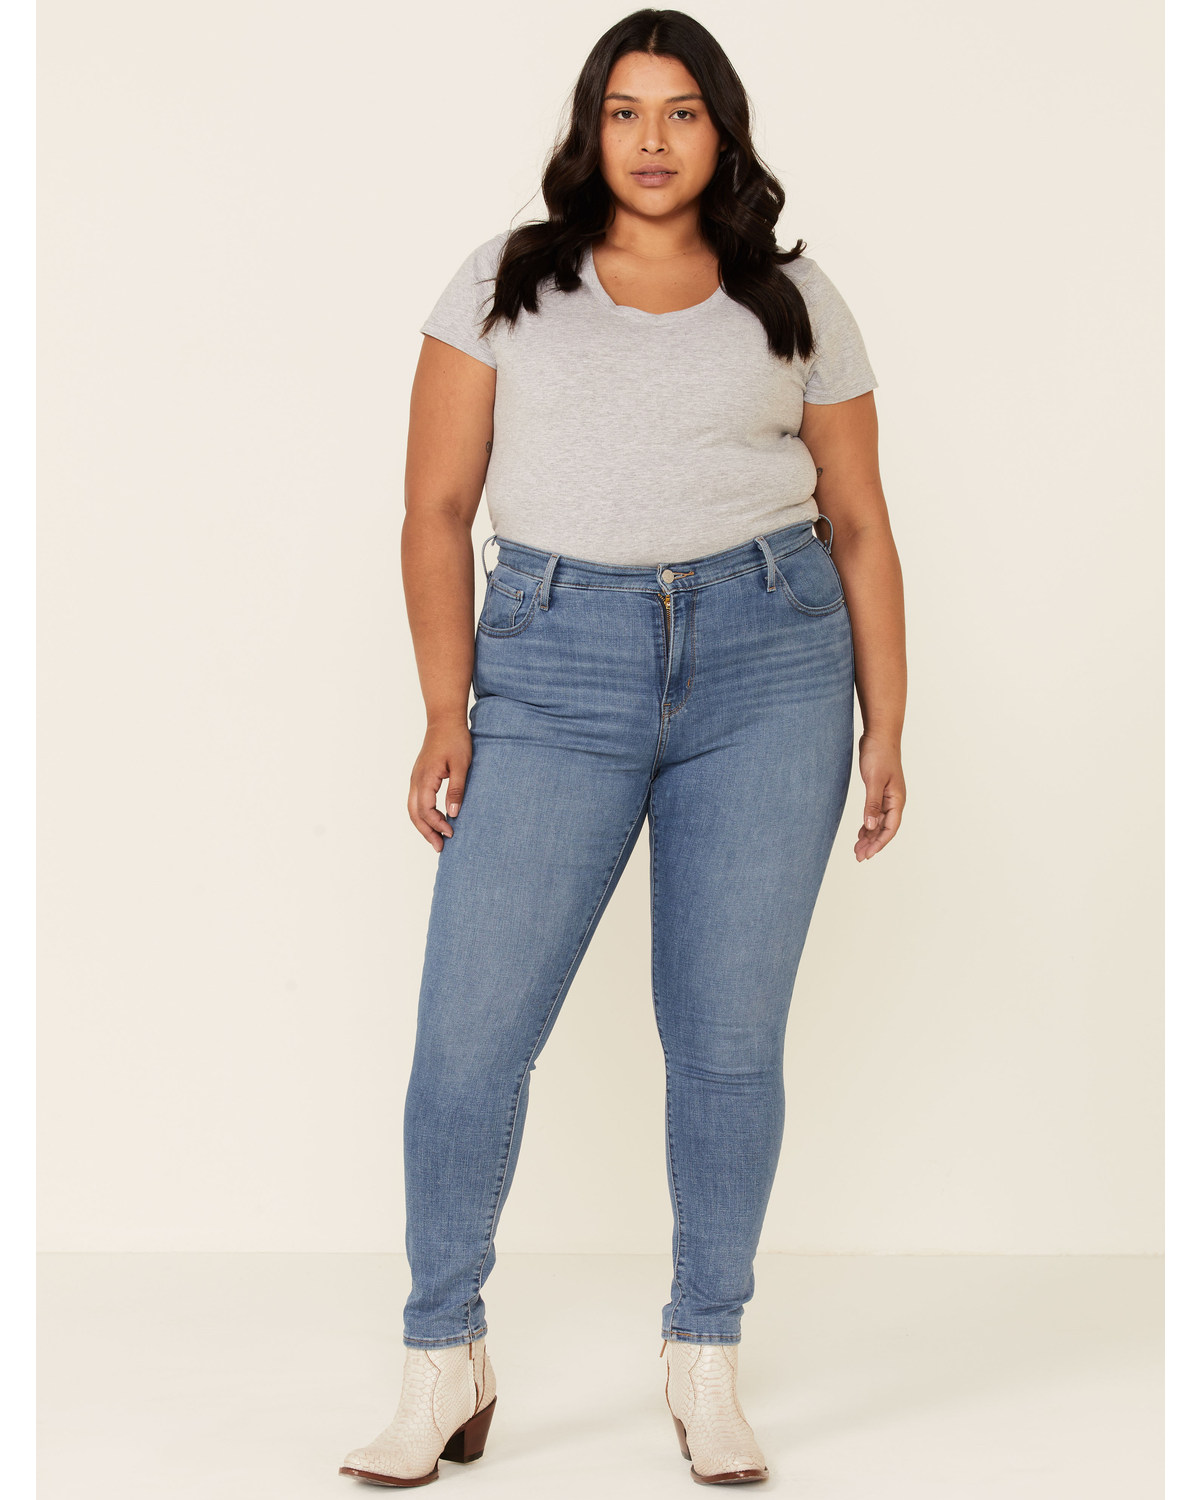 Levi's Women's 721 Lapis Skinny Jeans - Plus